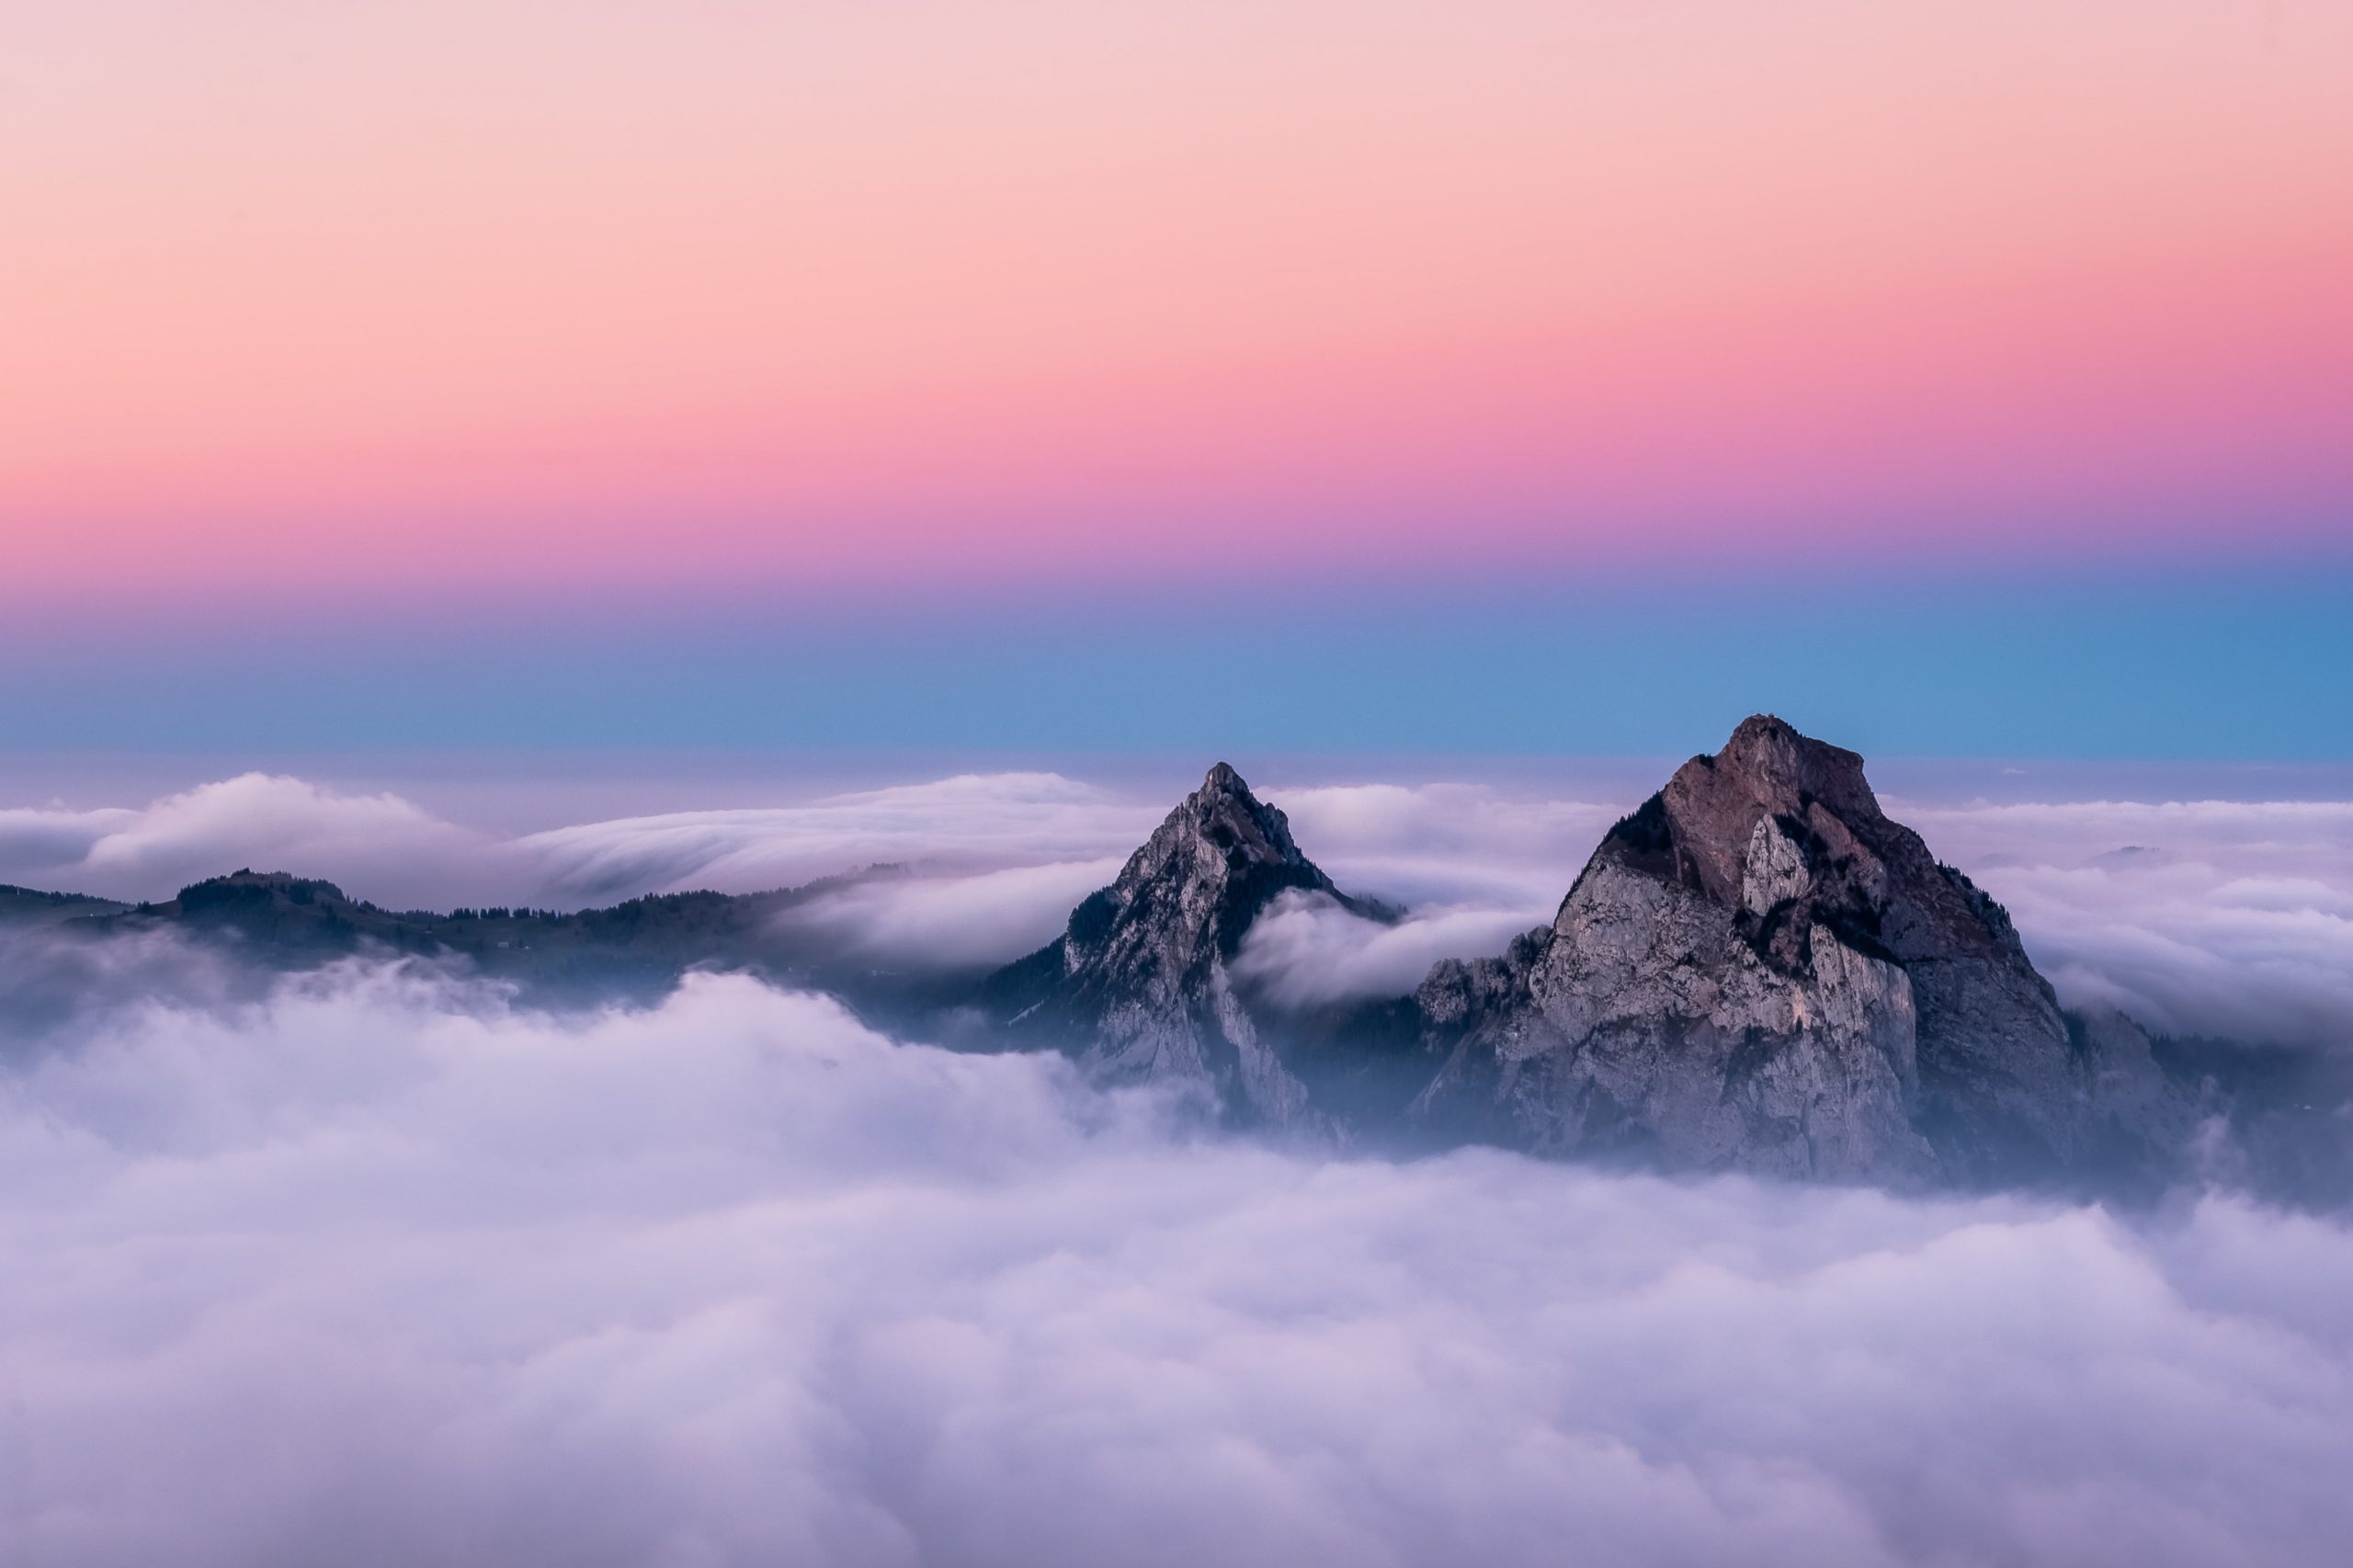 Bild von freepik, das einen schönen Berg zeigt - eine Vision, die therapinum bieten möchte